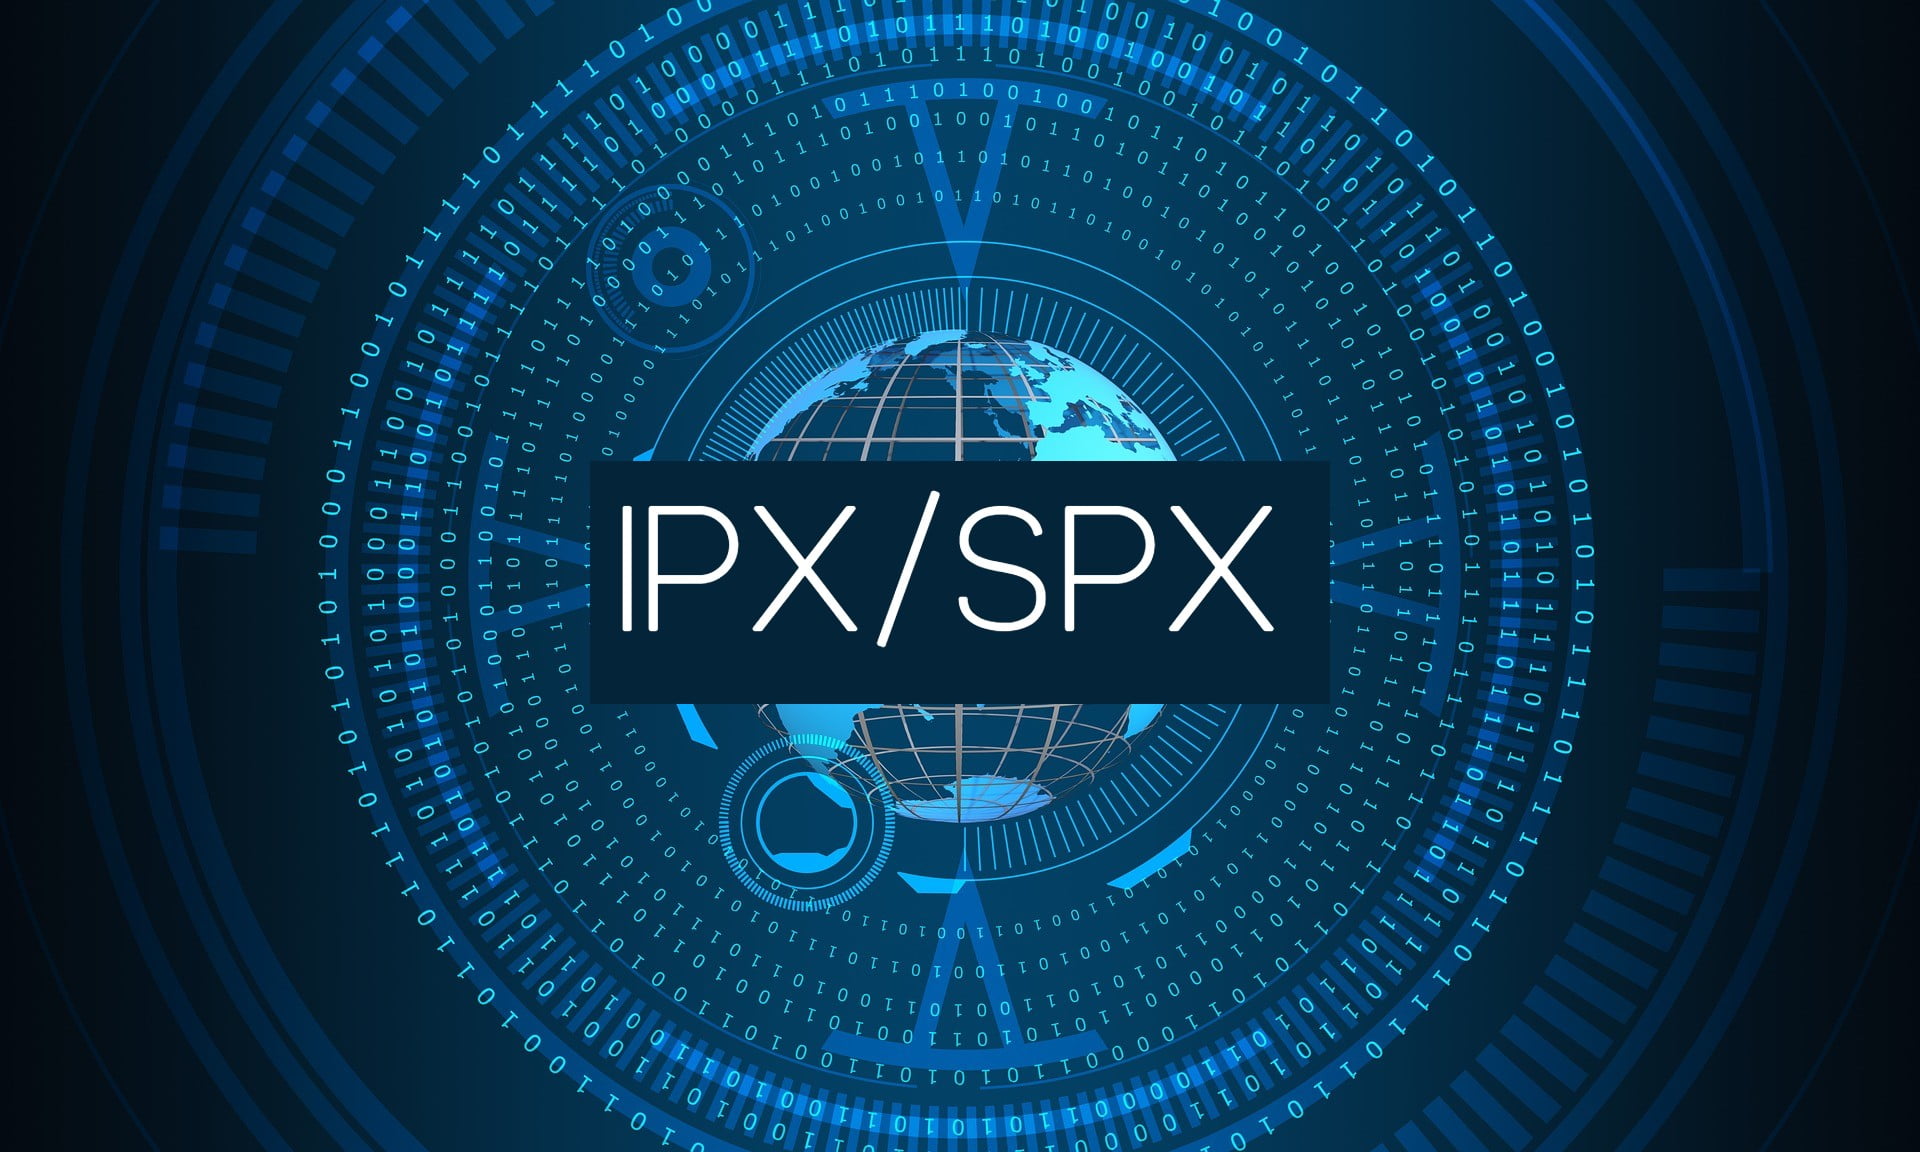 IPX/SPX